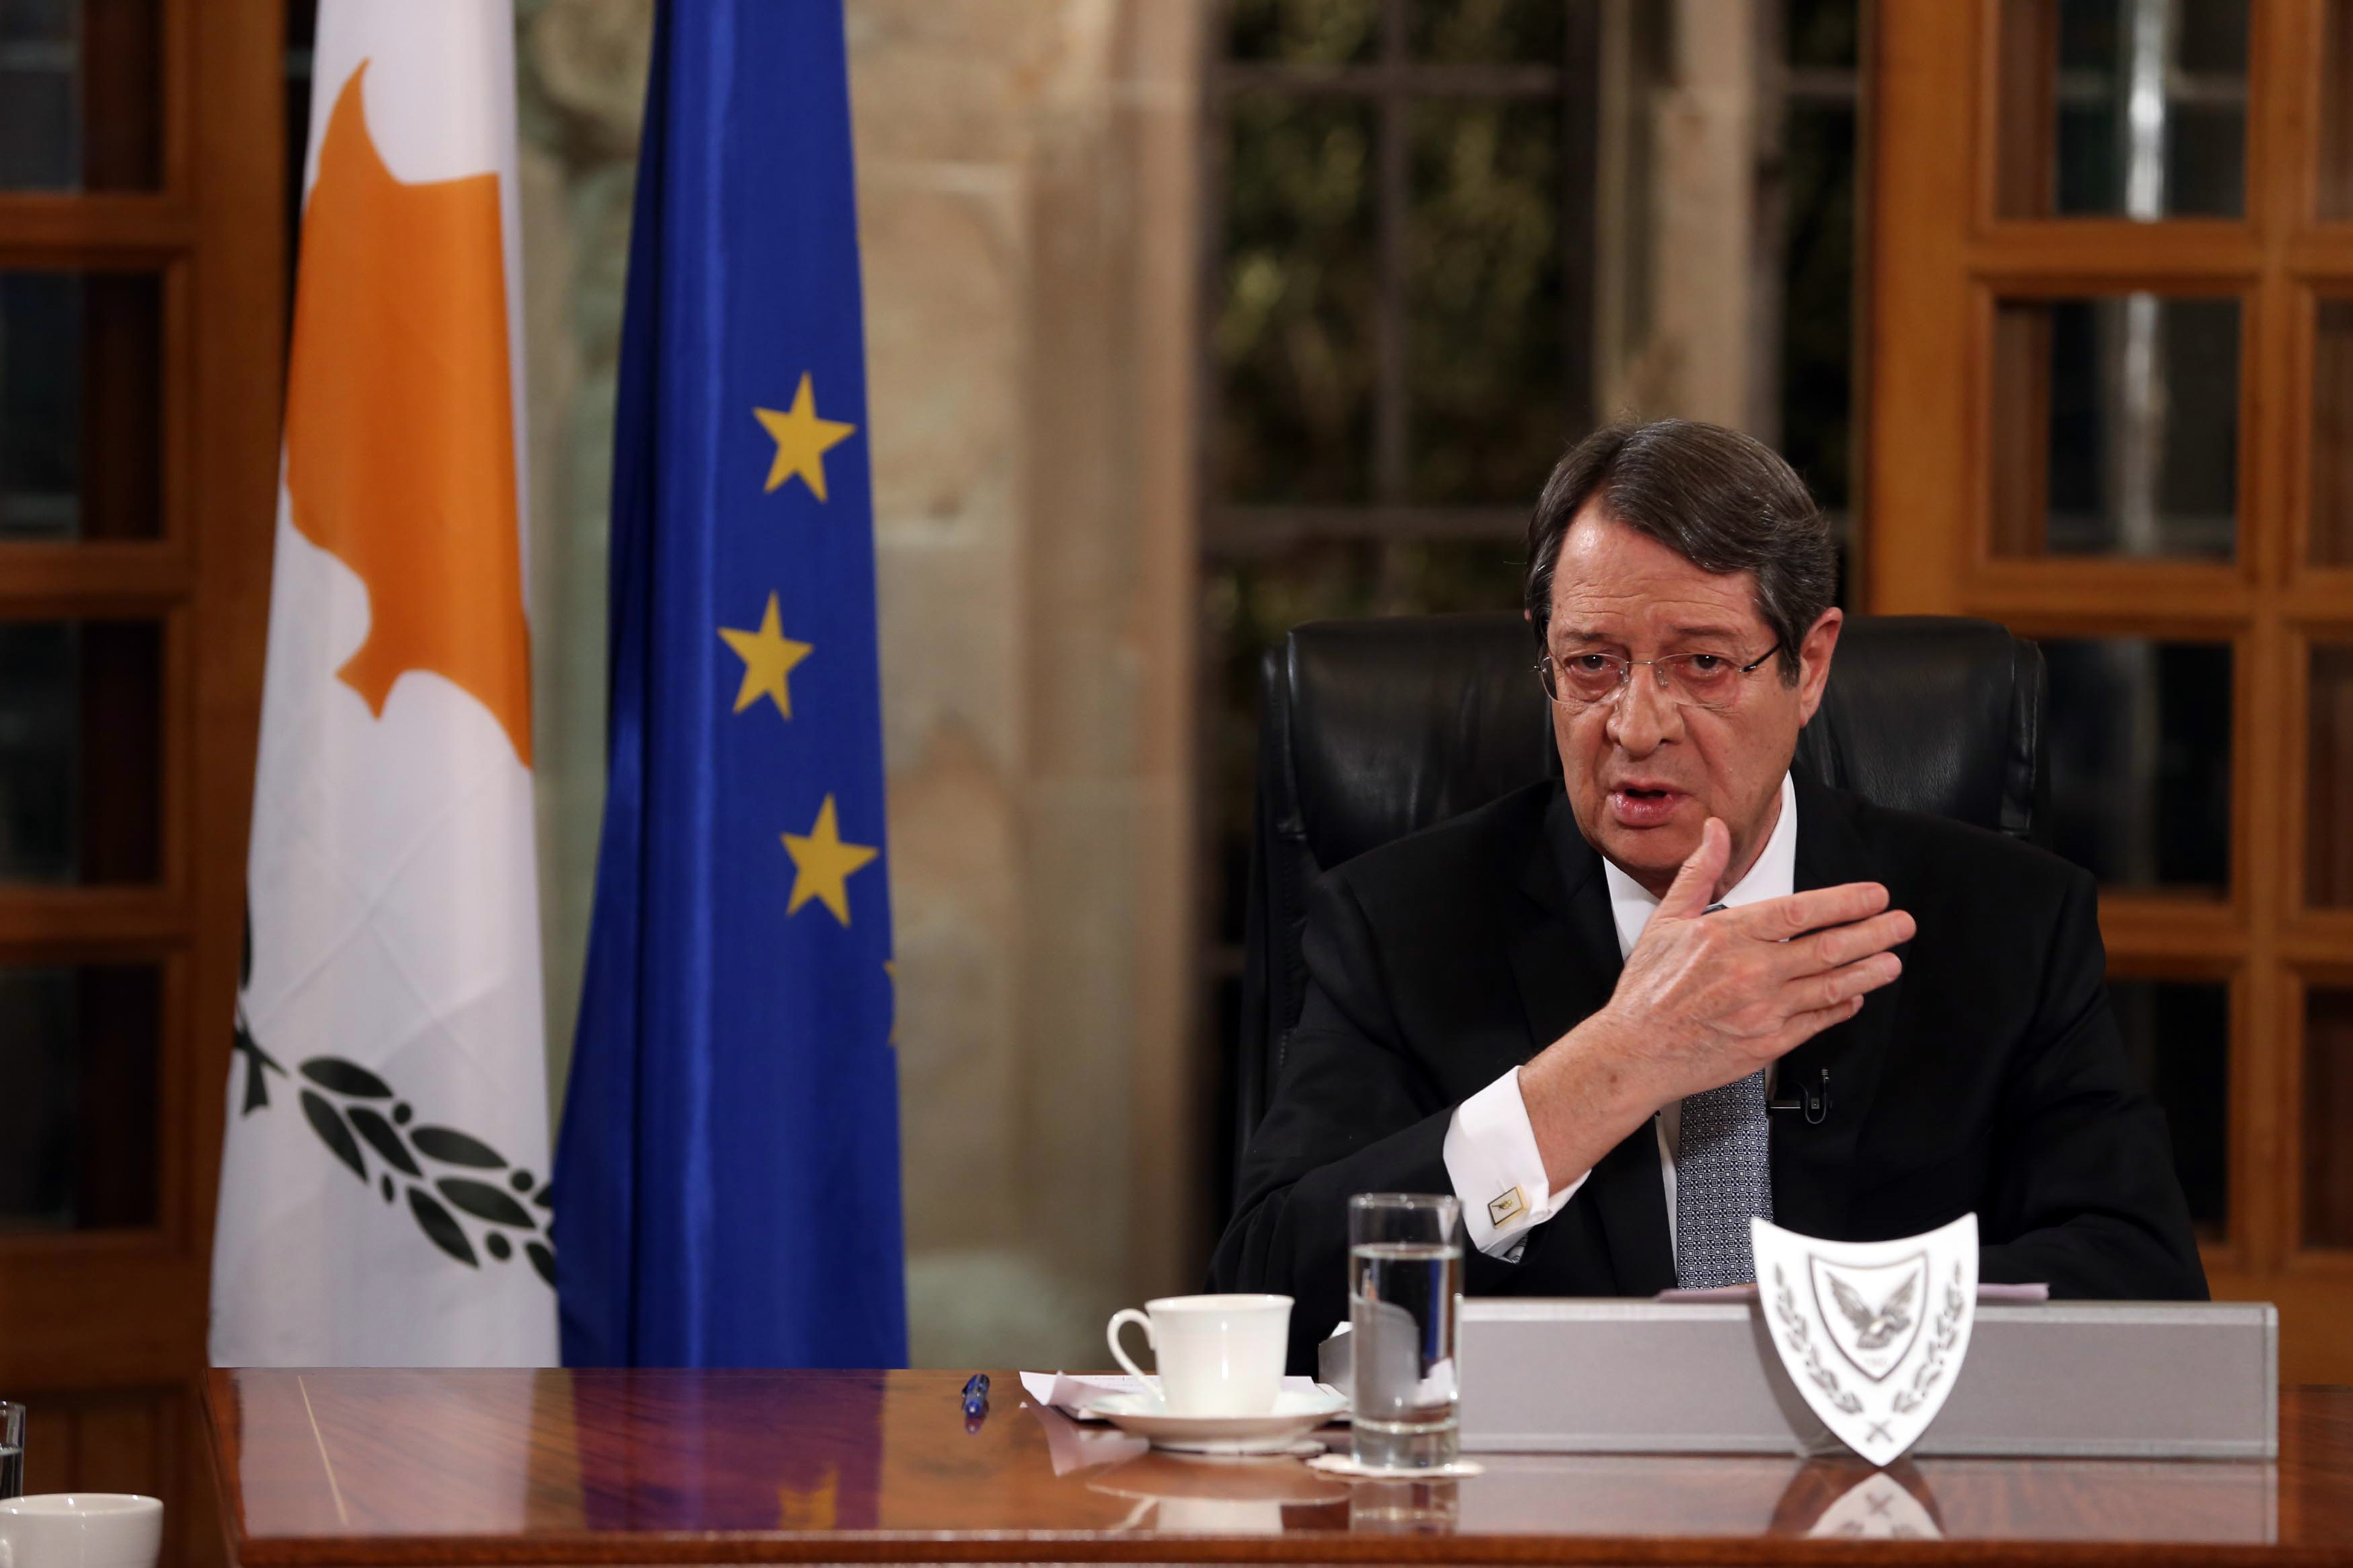 Σύνοδο για το Κυπριακό χωρίς όρους θέλει η Αγκυρα